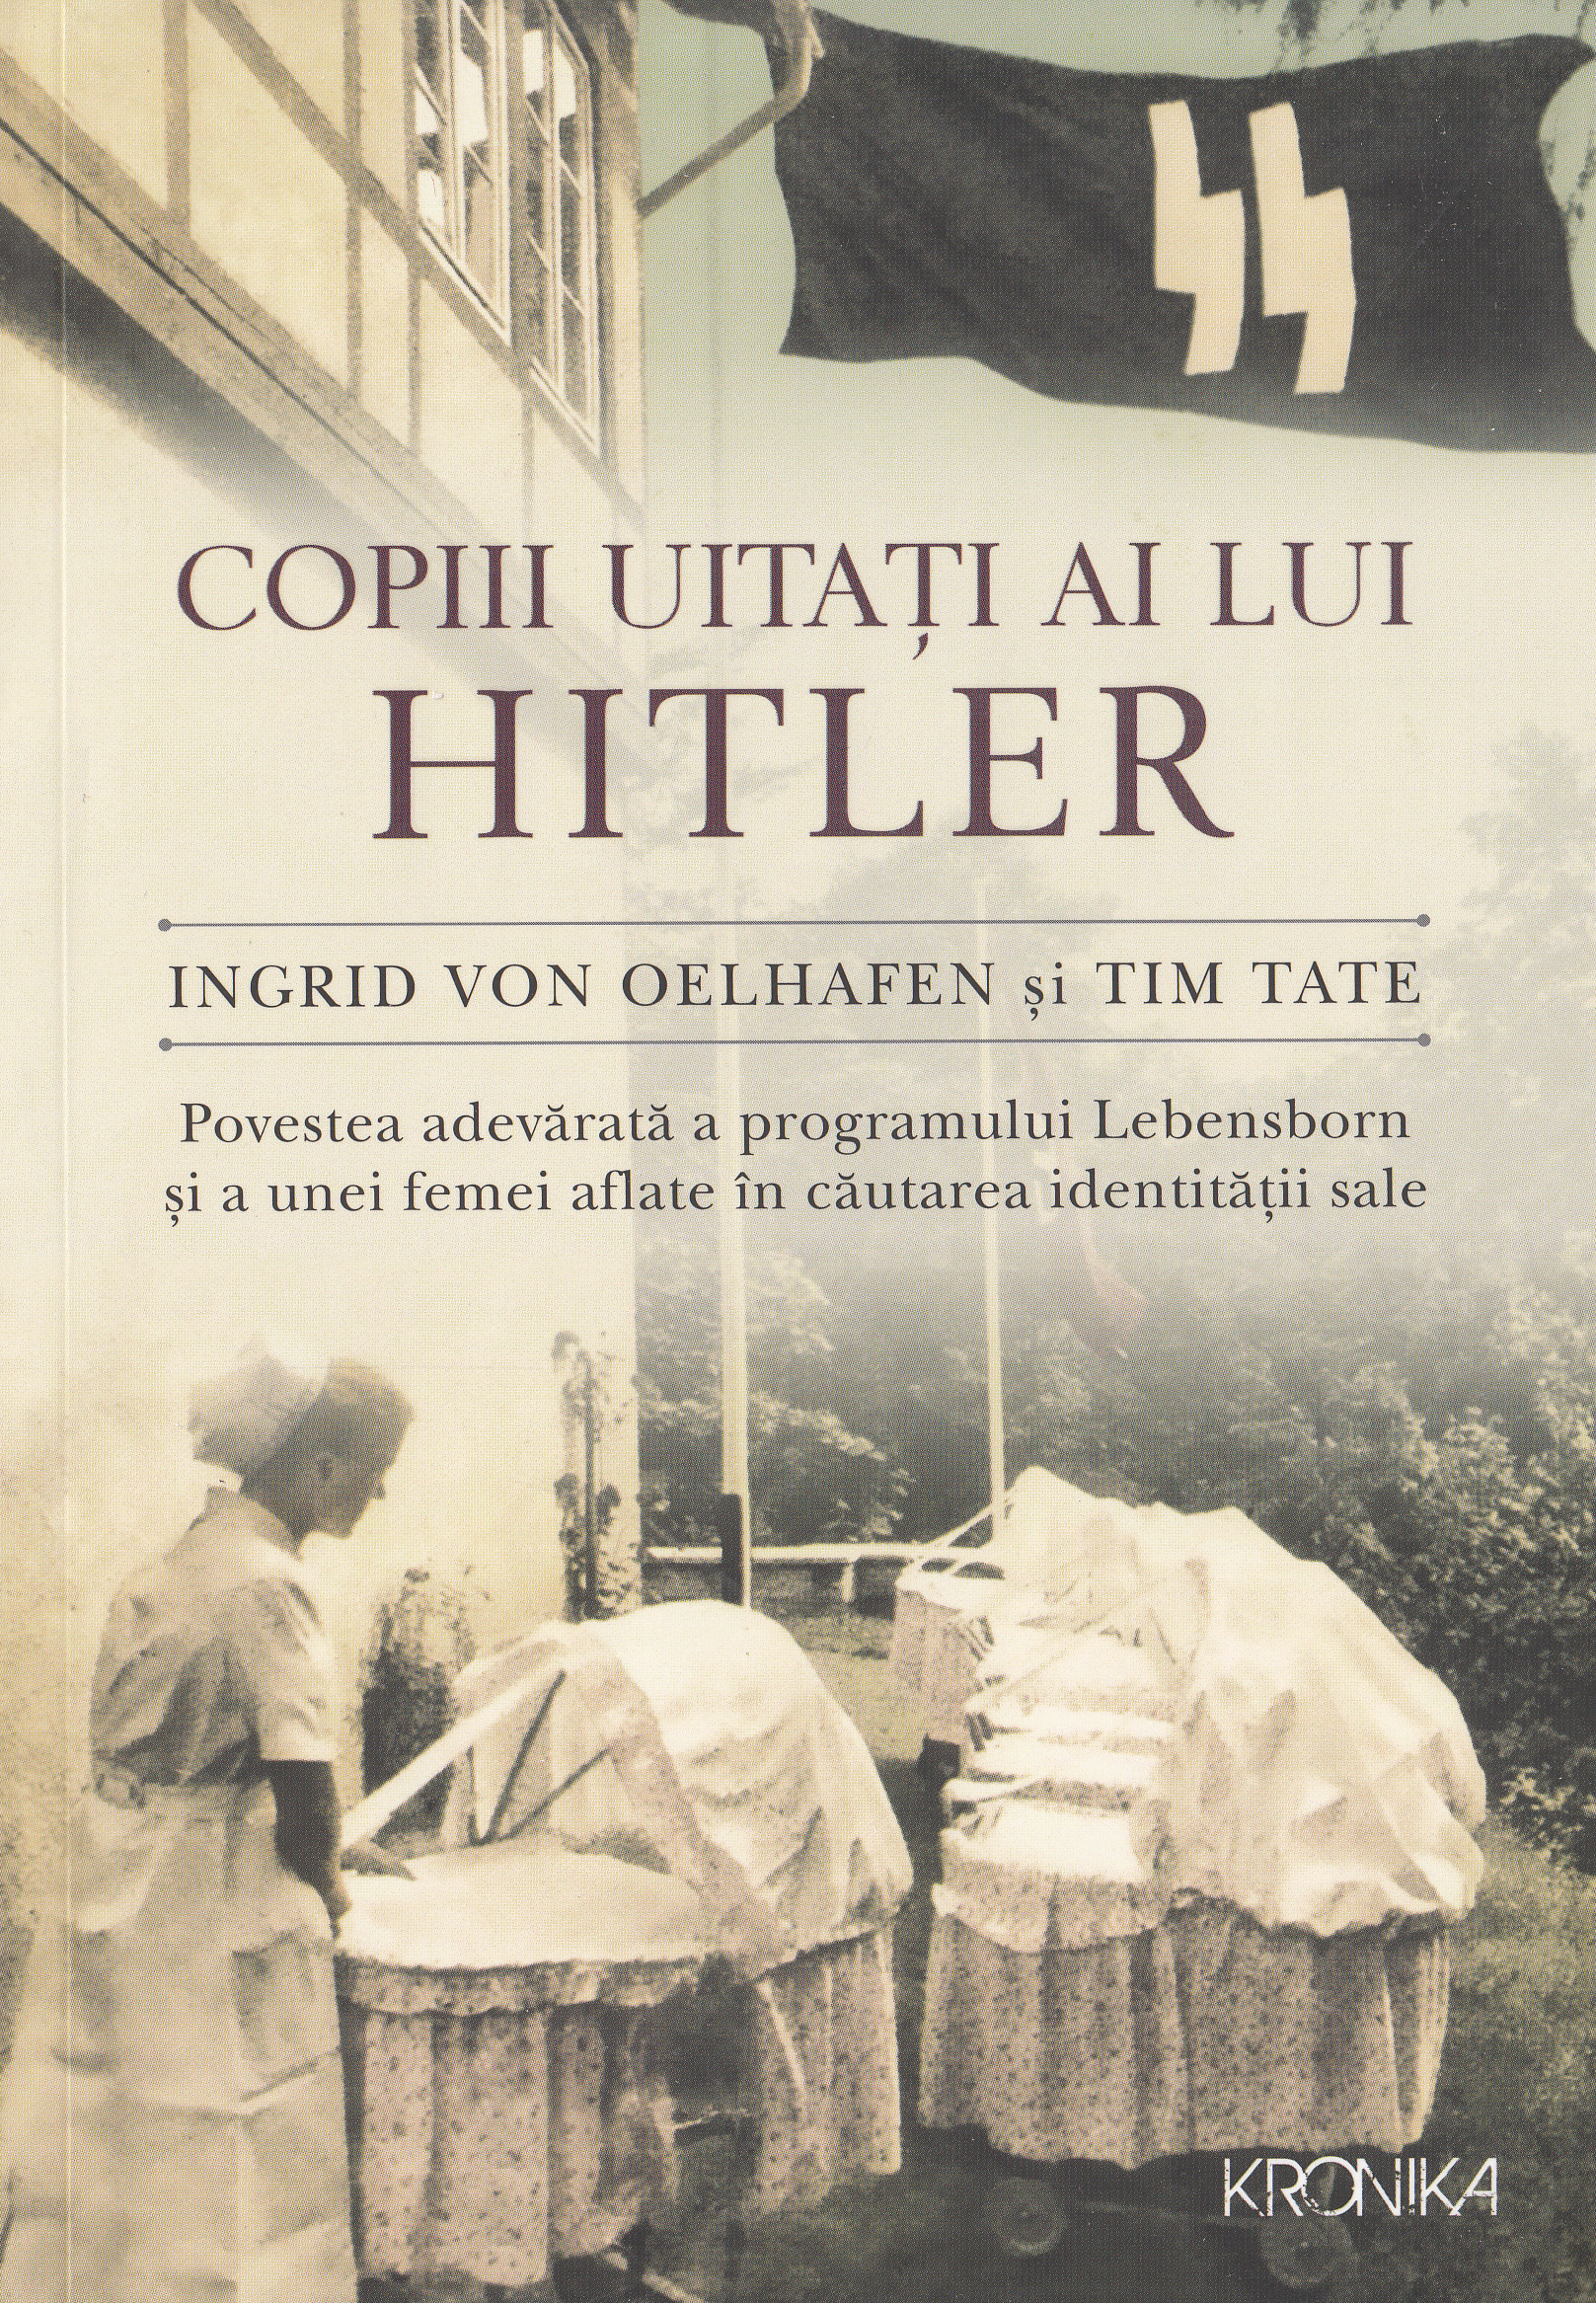 Copiii uitati ai lui Hitler - Ingrid von Oelhafen, Tim Tate